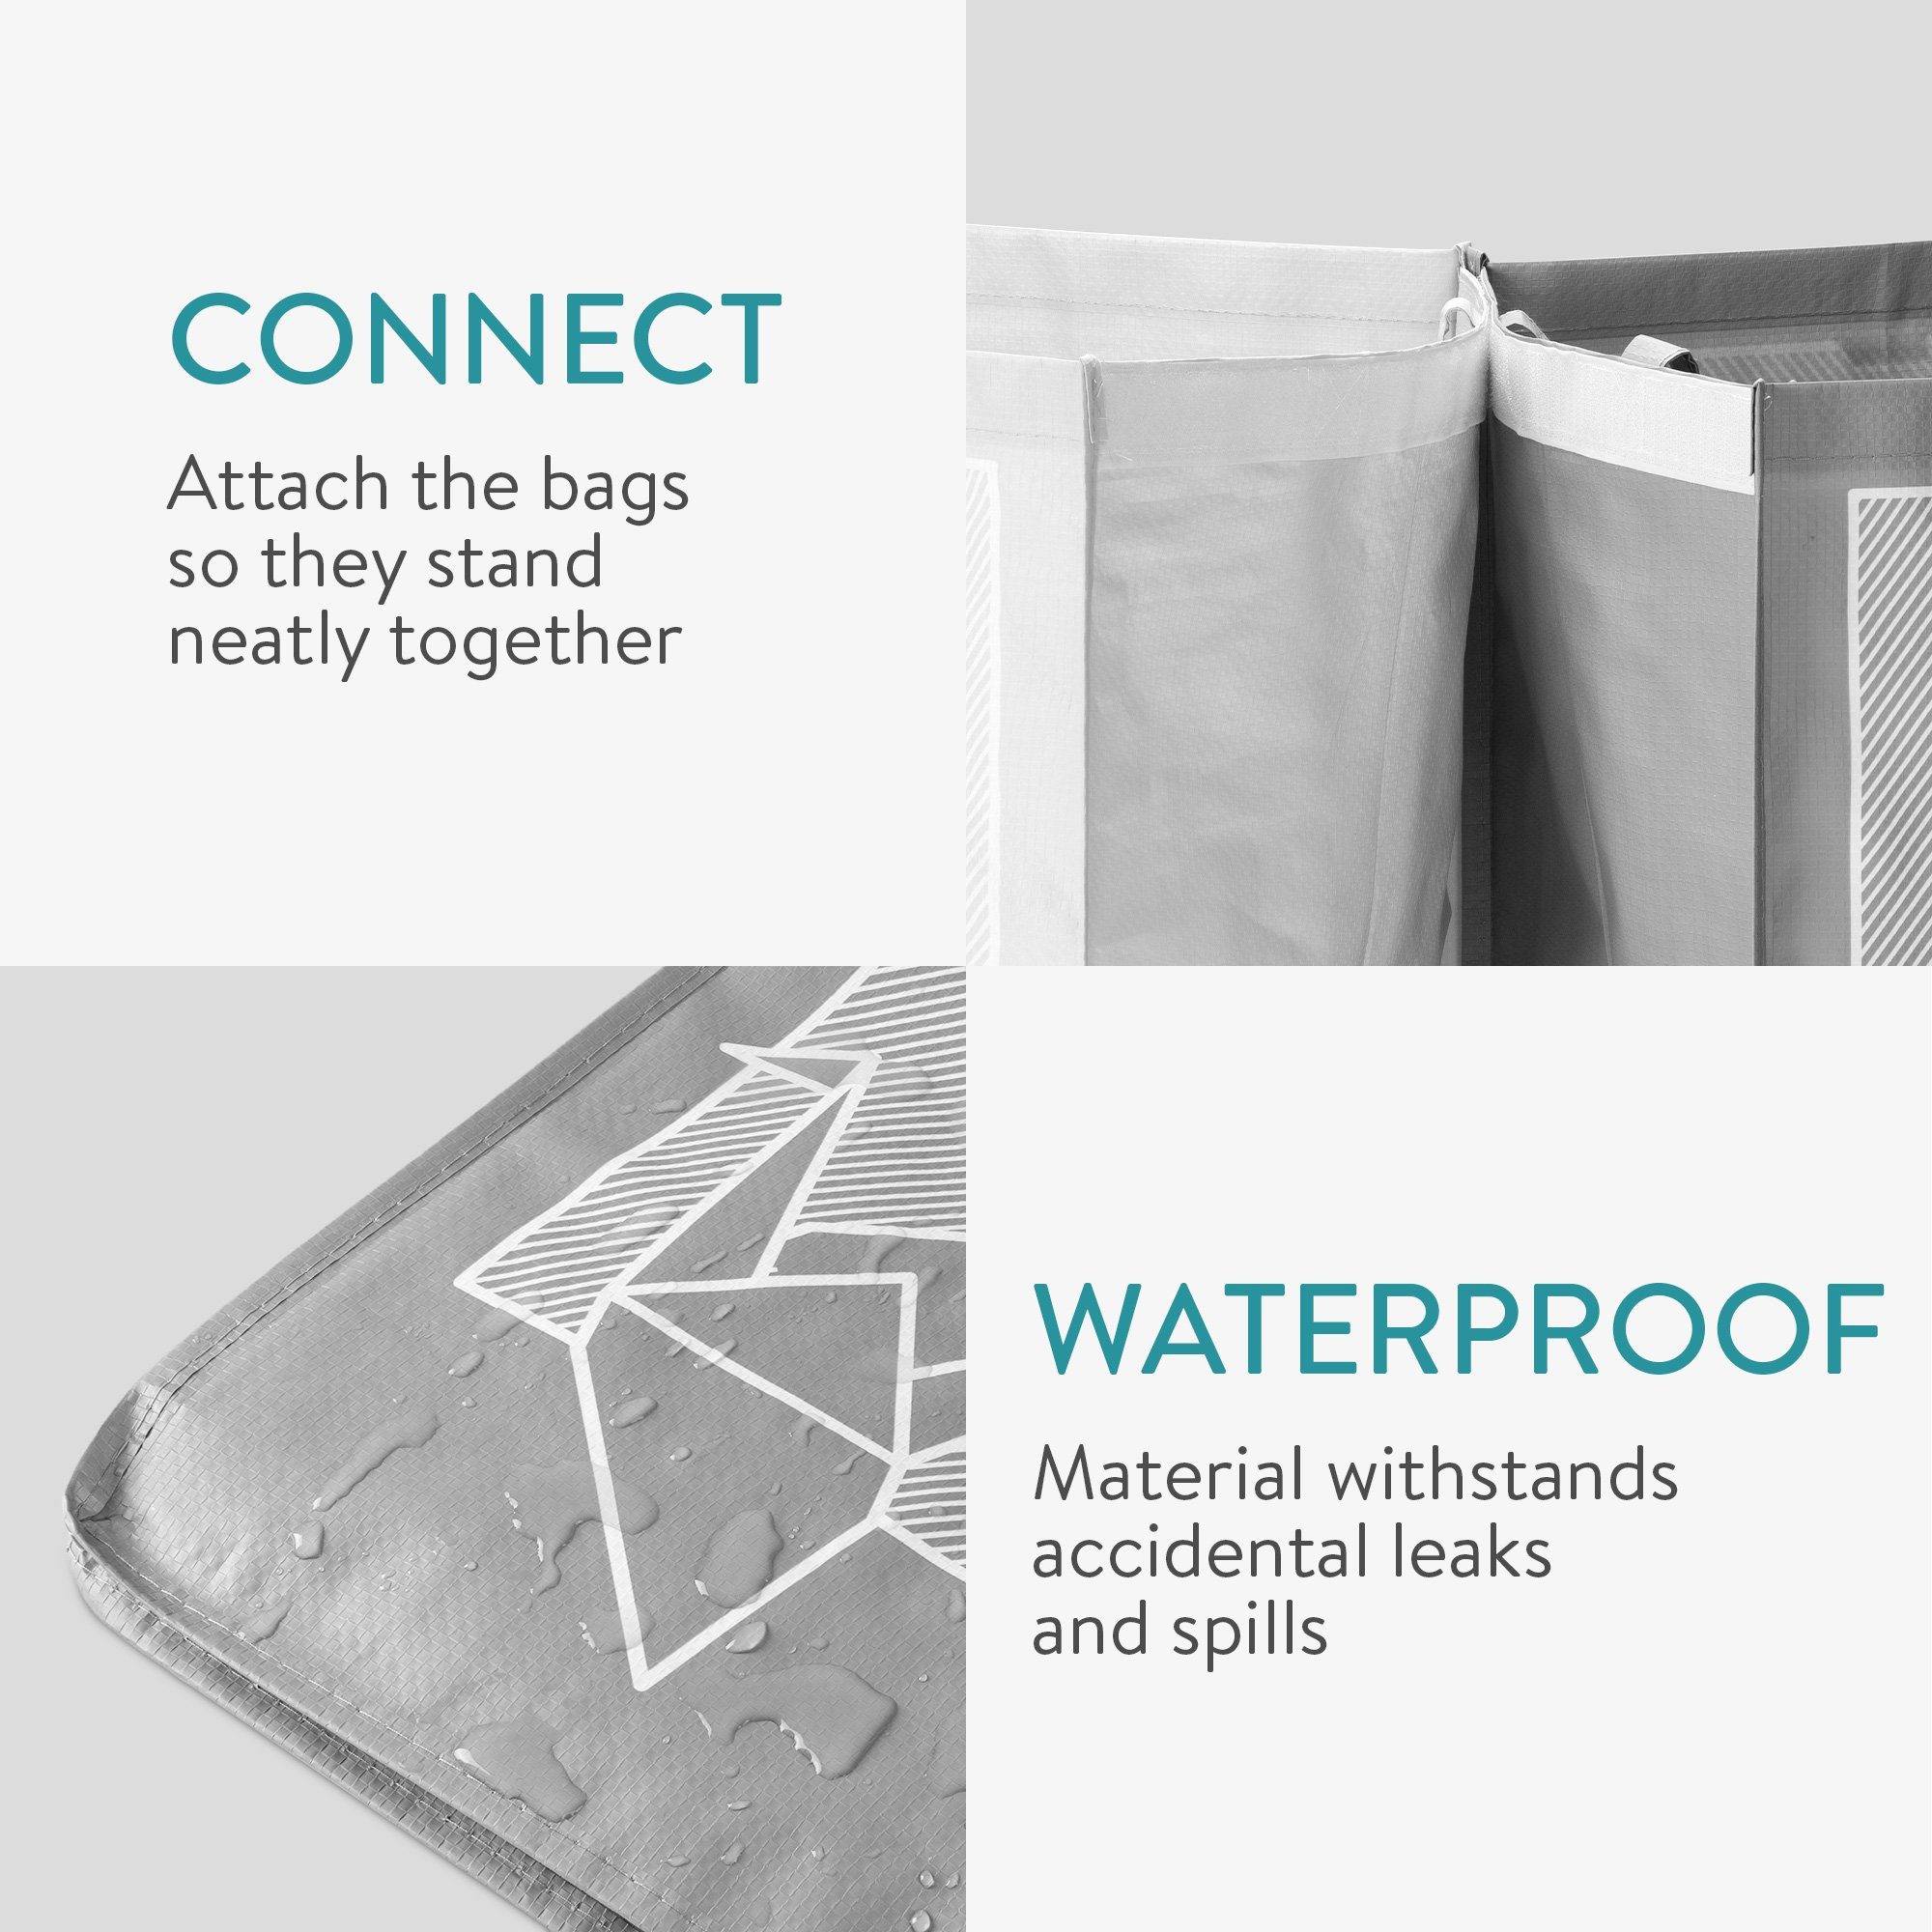 und Papier Recycling Taschen 3er Glas, Mülltrennsystem Navaris Plastik für Set Müllsortierer -